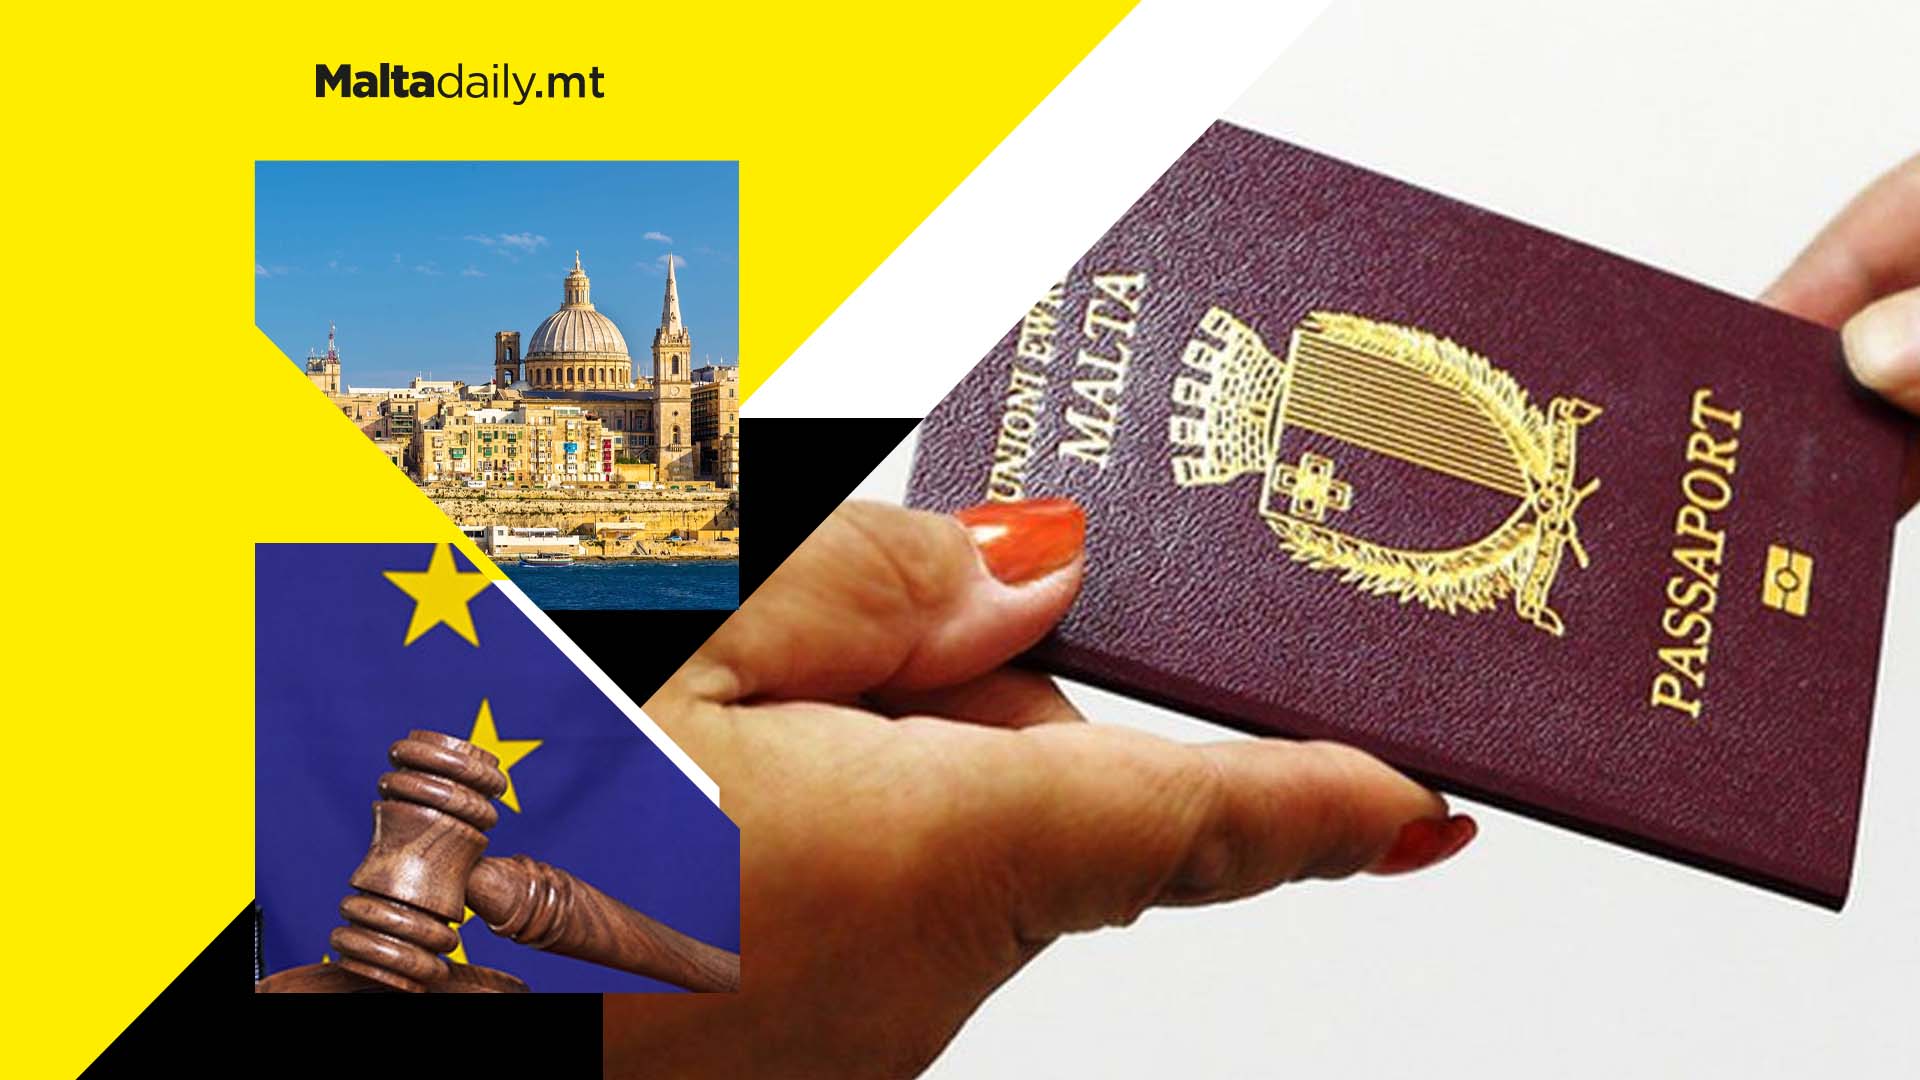 Malta taken to court by European Union over golden passport scheme